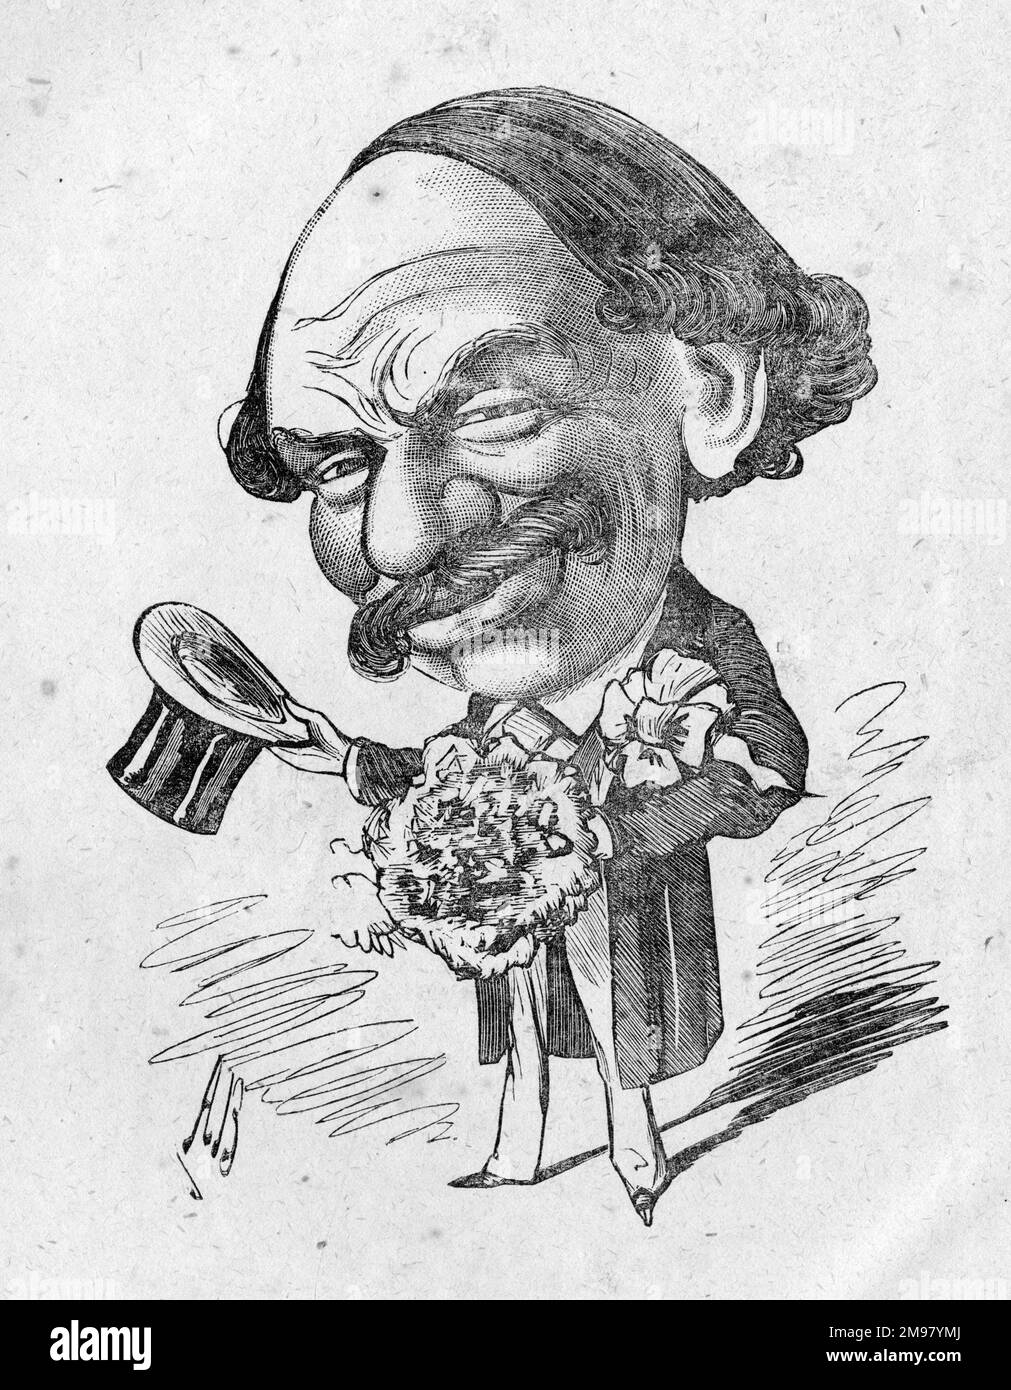 Caricature de Sir Julius Benedict (1804-1885), la jeune mariée. Il était un compositeur et chef d'orchestre d'origine allemande qui a vécu en Angleterre pendant la majeure partie de sa carrière. Banque D'Images